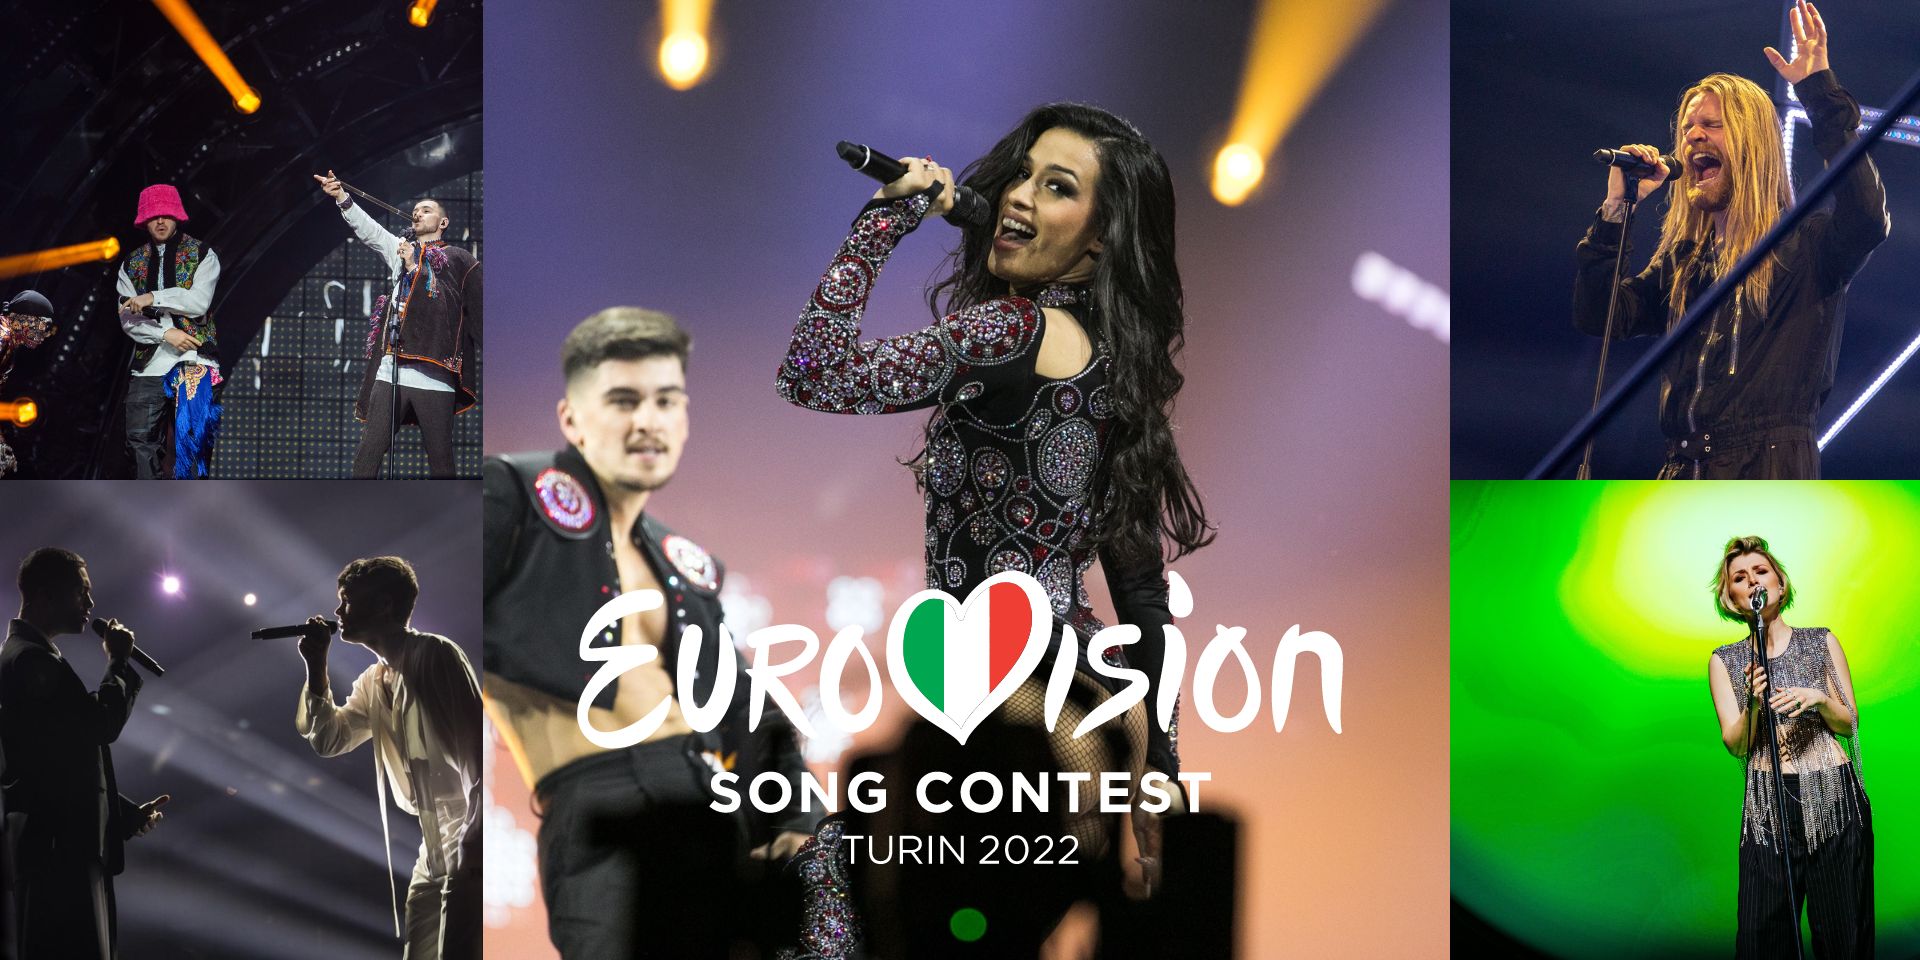 ¿Cómo van las apuestas de Eurovisión 2022? Estos son los 5 favoritos